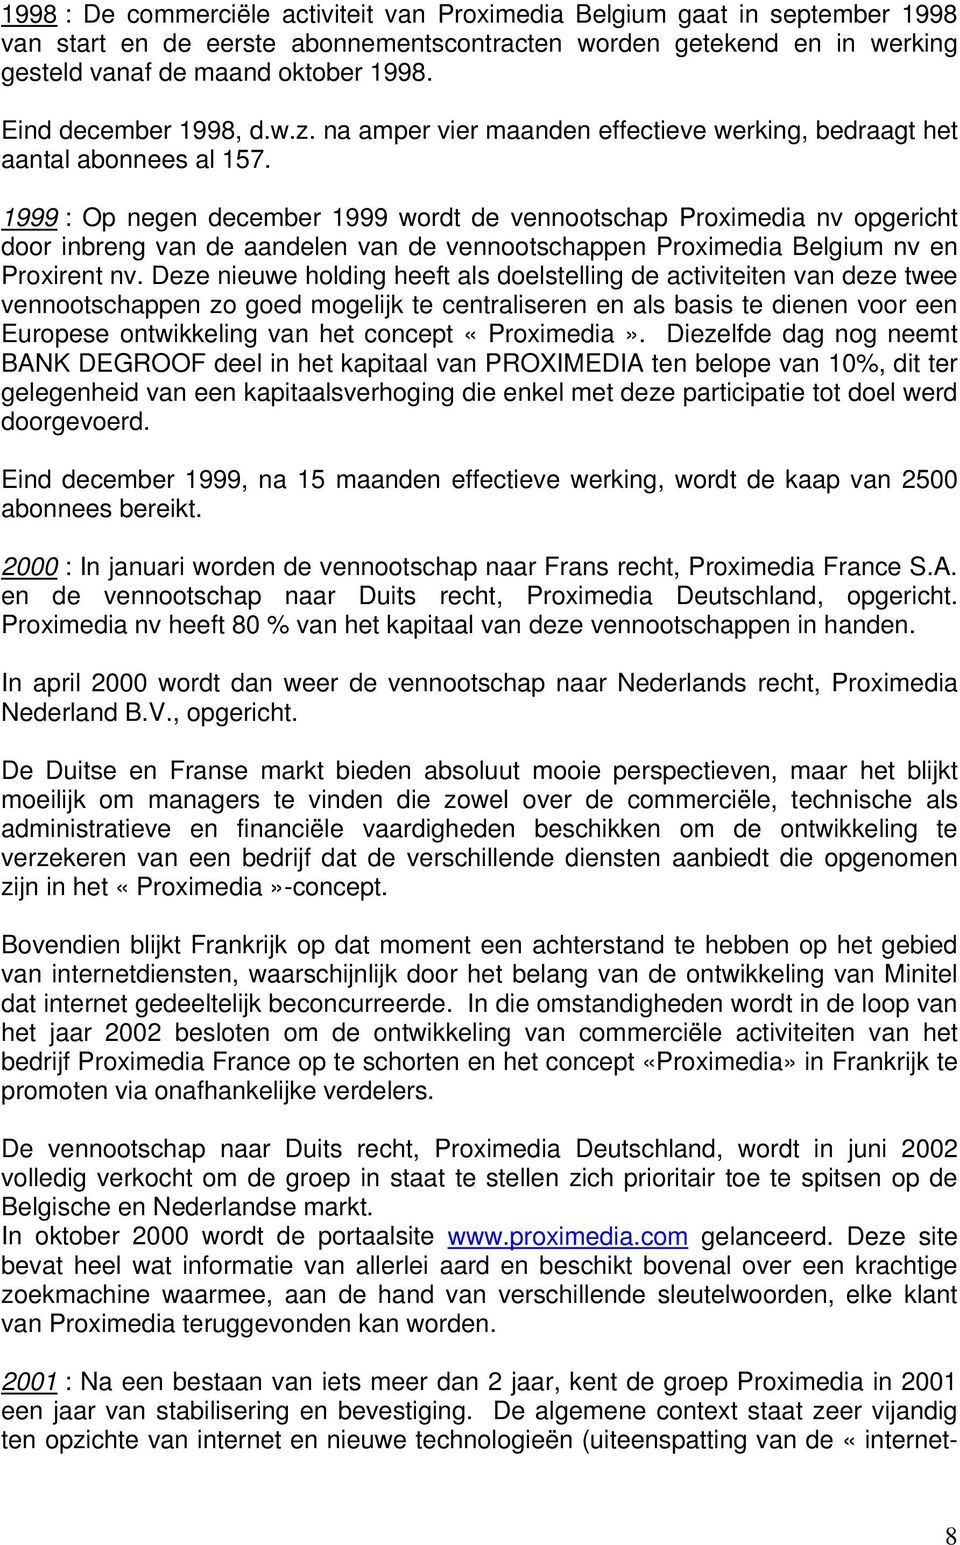 1999 : Op negen december 1999 wordt de vennootschap Proximedia nv opgericht door inbreng van de aandelen van de vennootschappen Proximedia Belgium nv en Proxirent nv.